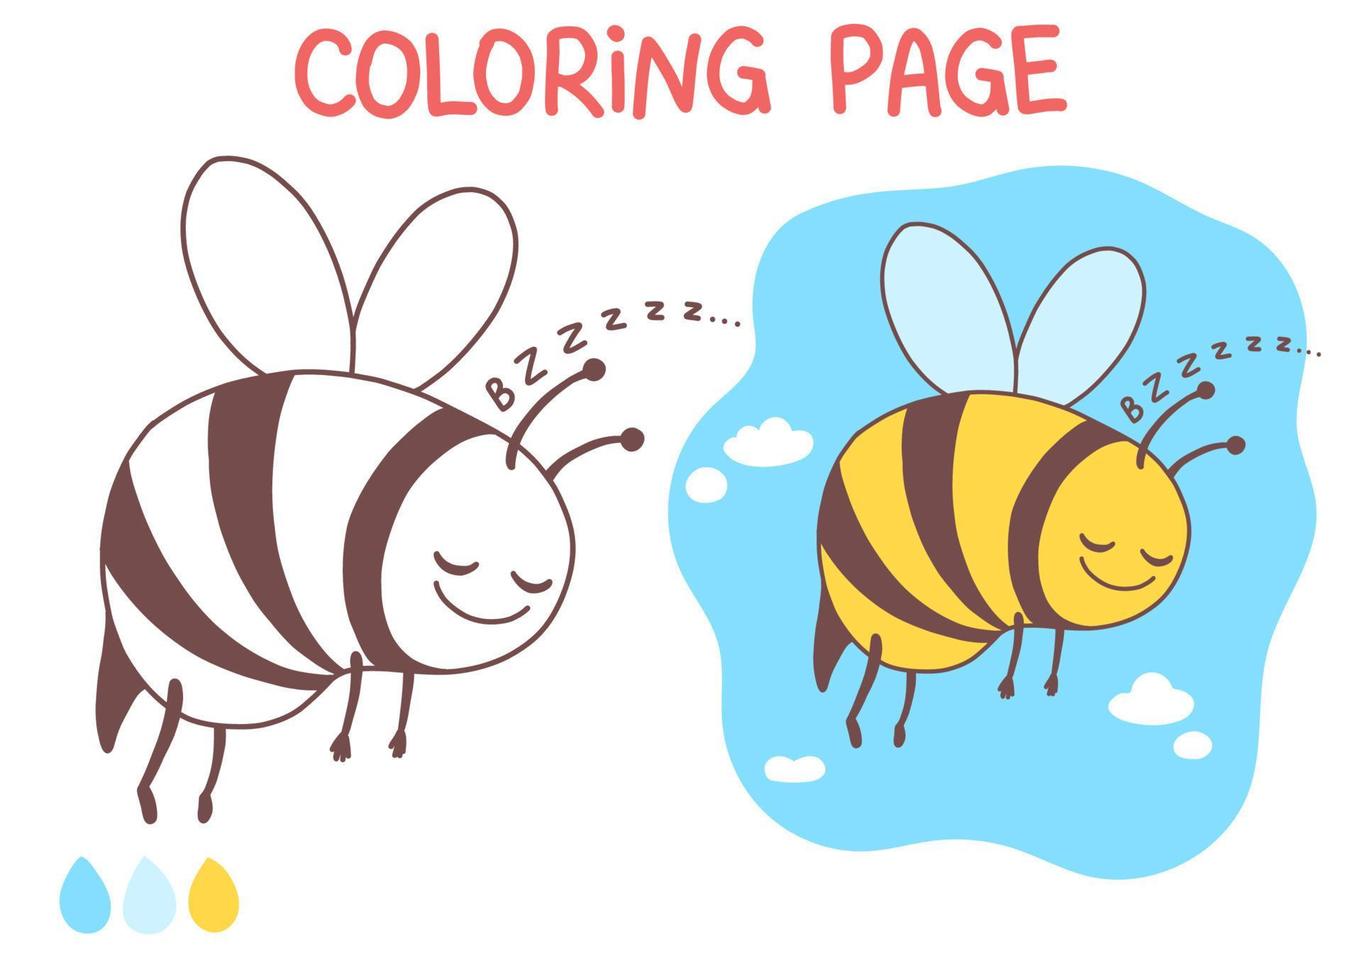 ape pagina da colorare divertente e carino doodle illustrazione vettoriale